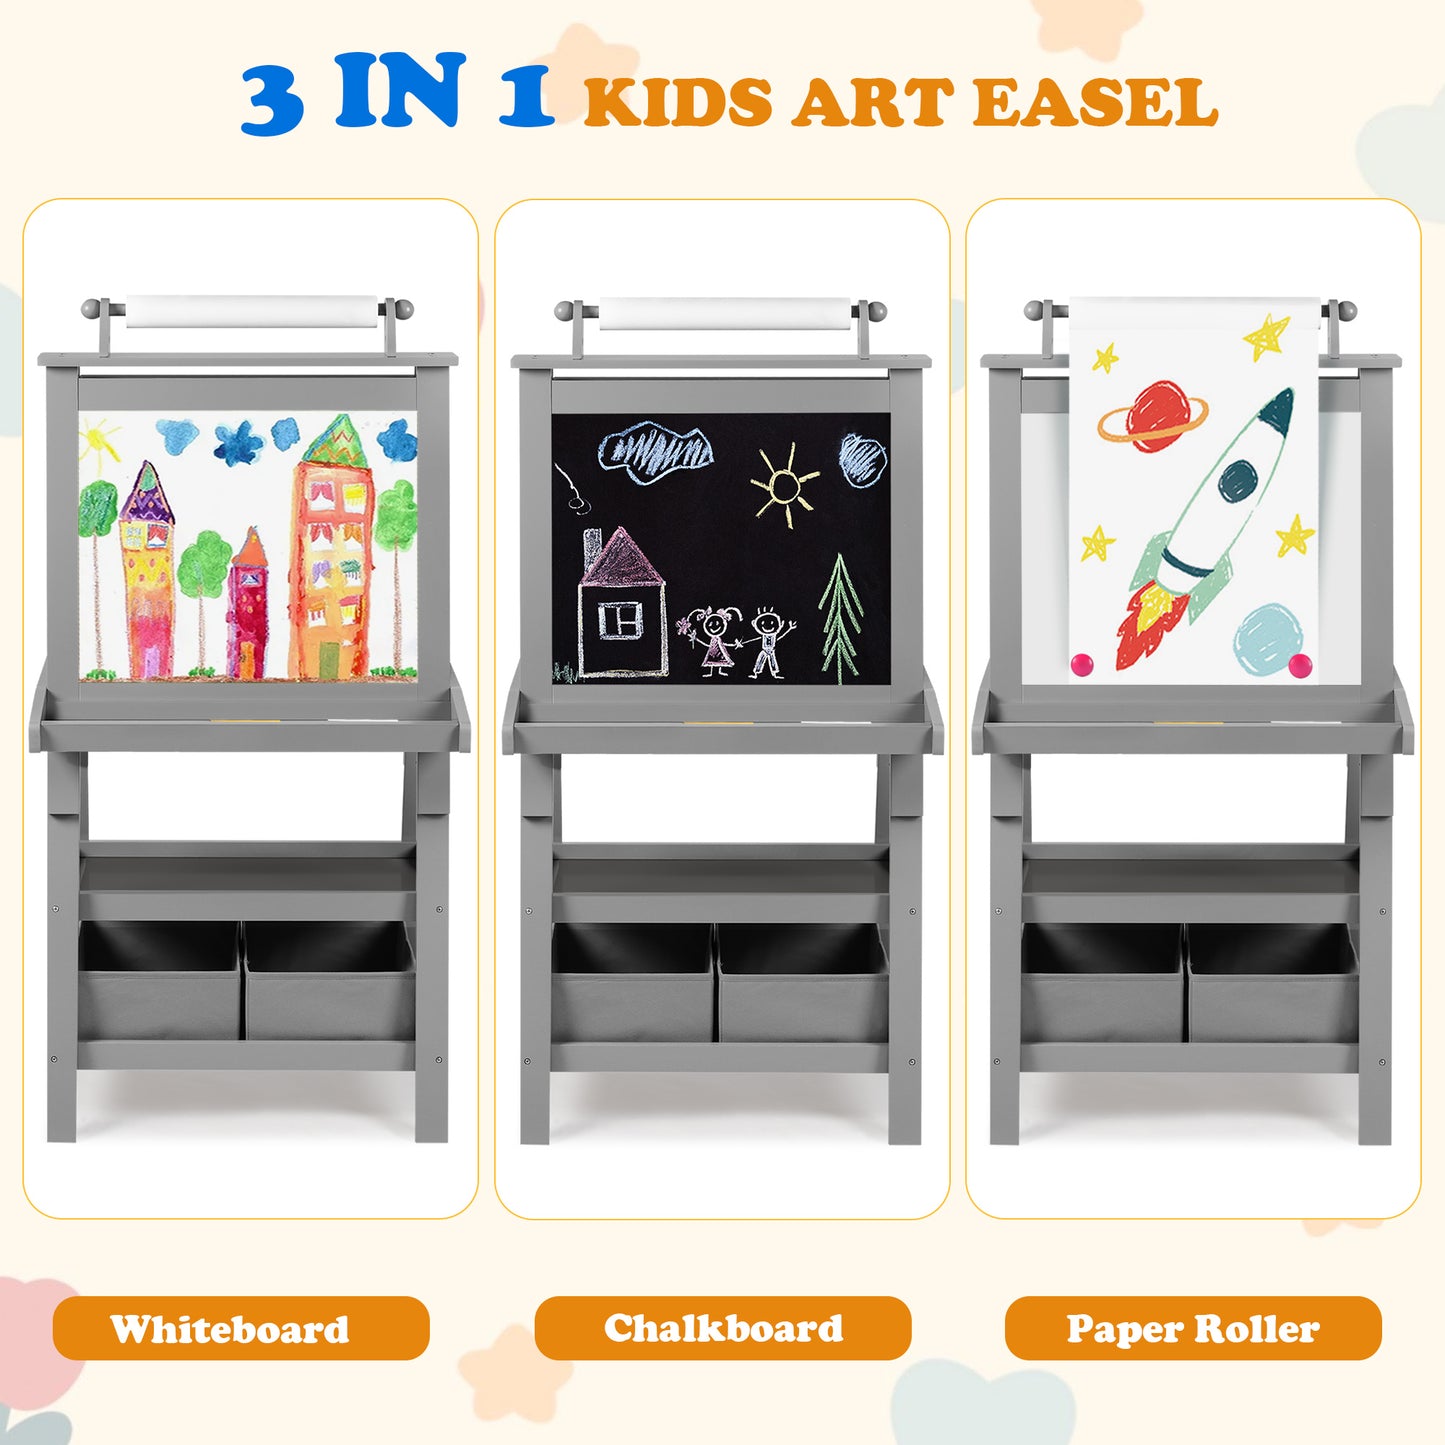 3 in 1 Kids Art Easel Double-Sided Magnetic Whiteboard Chalkboard Paper Roller, Grey